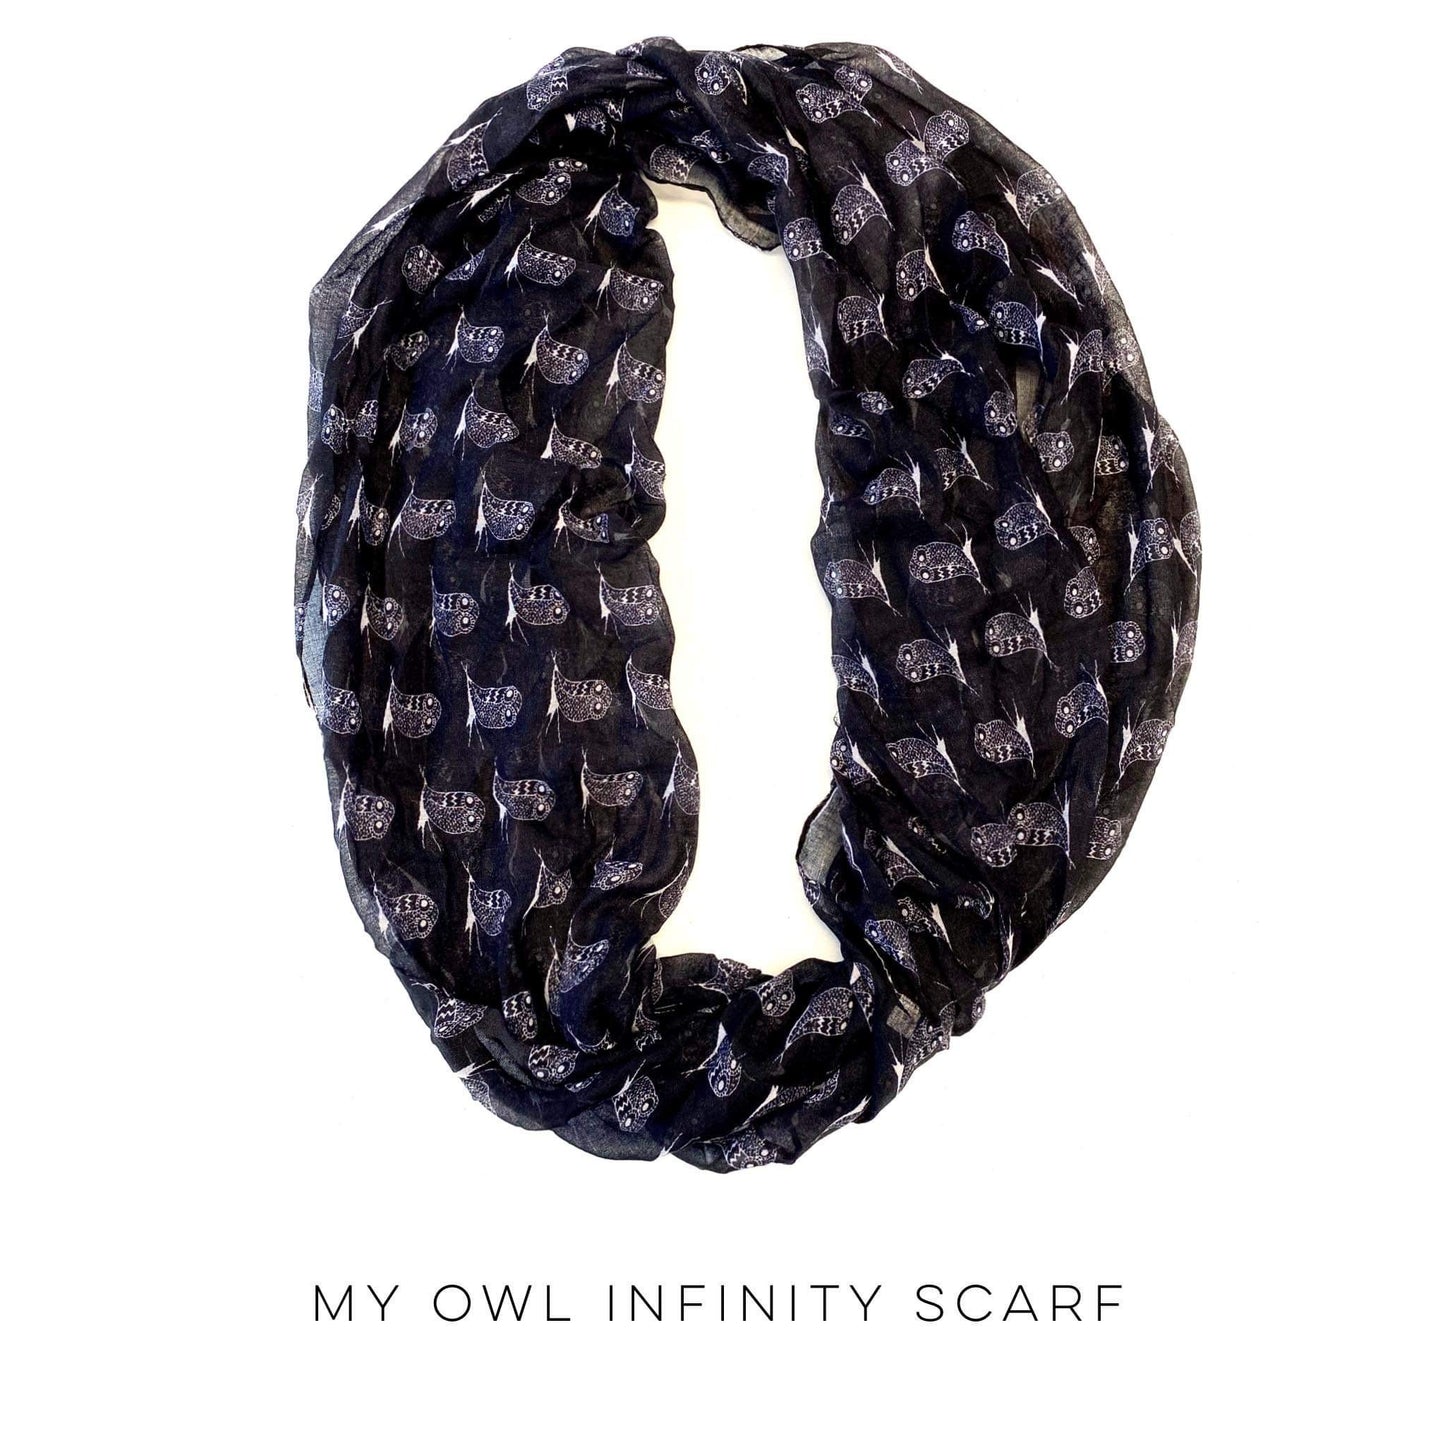 My Owl Infinity Scarf